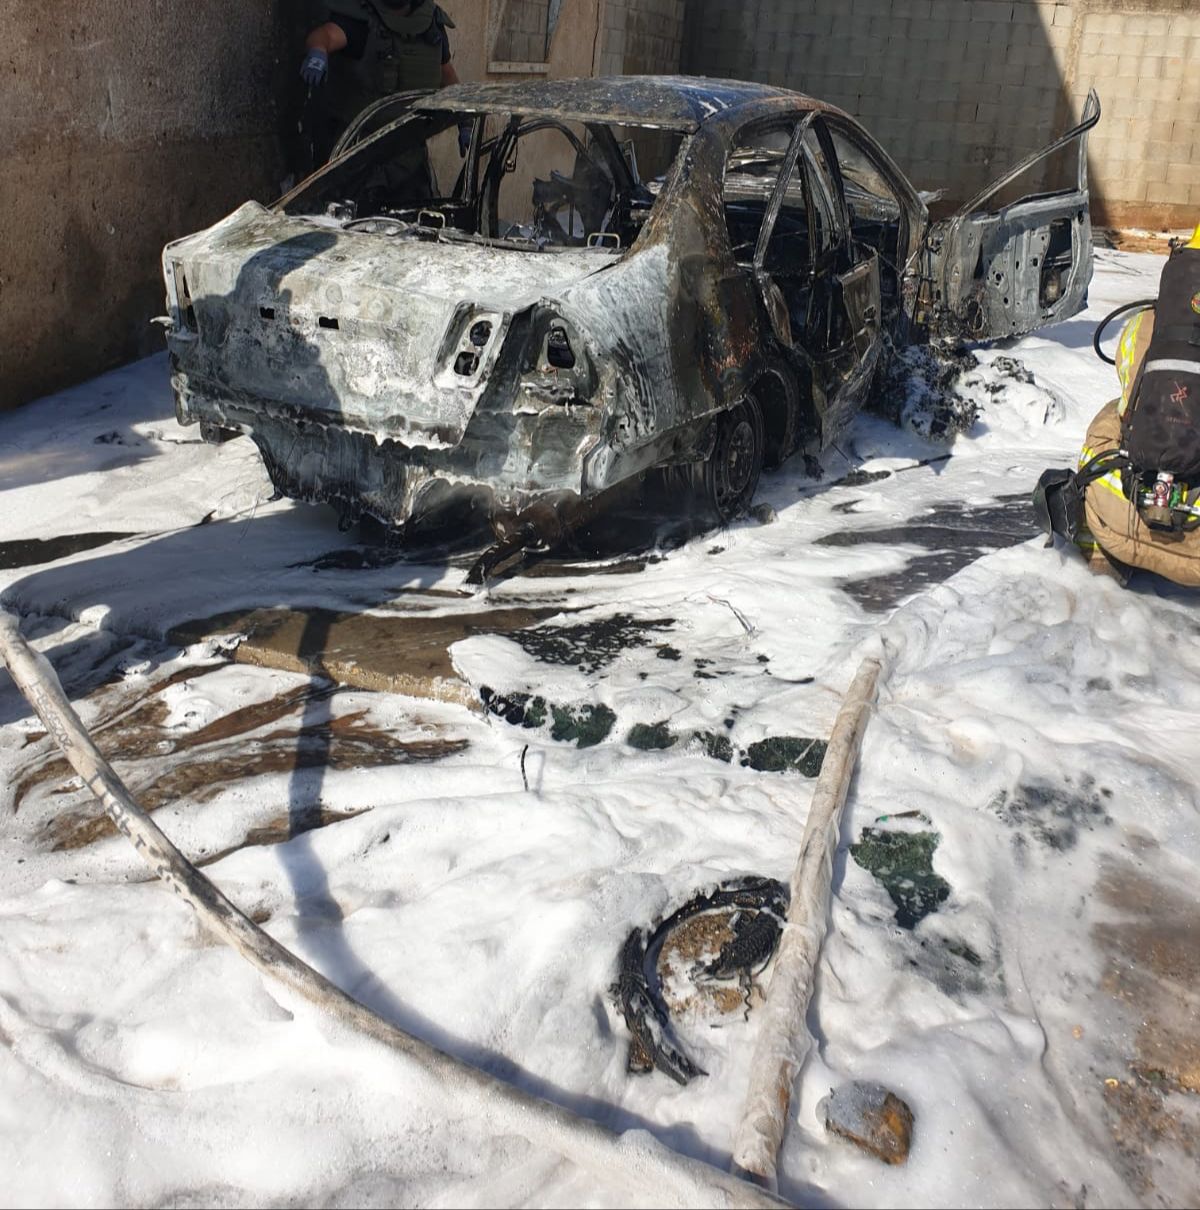  الرملة: العثور على جثة سيدة داخل سيارة محترقة بالجواريش